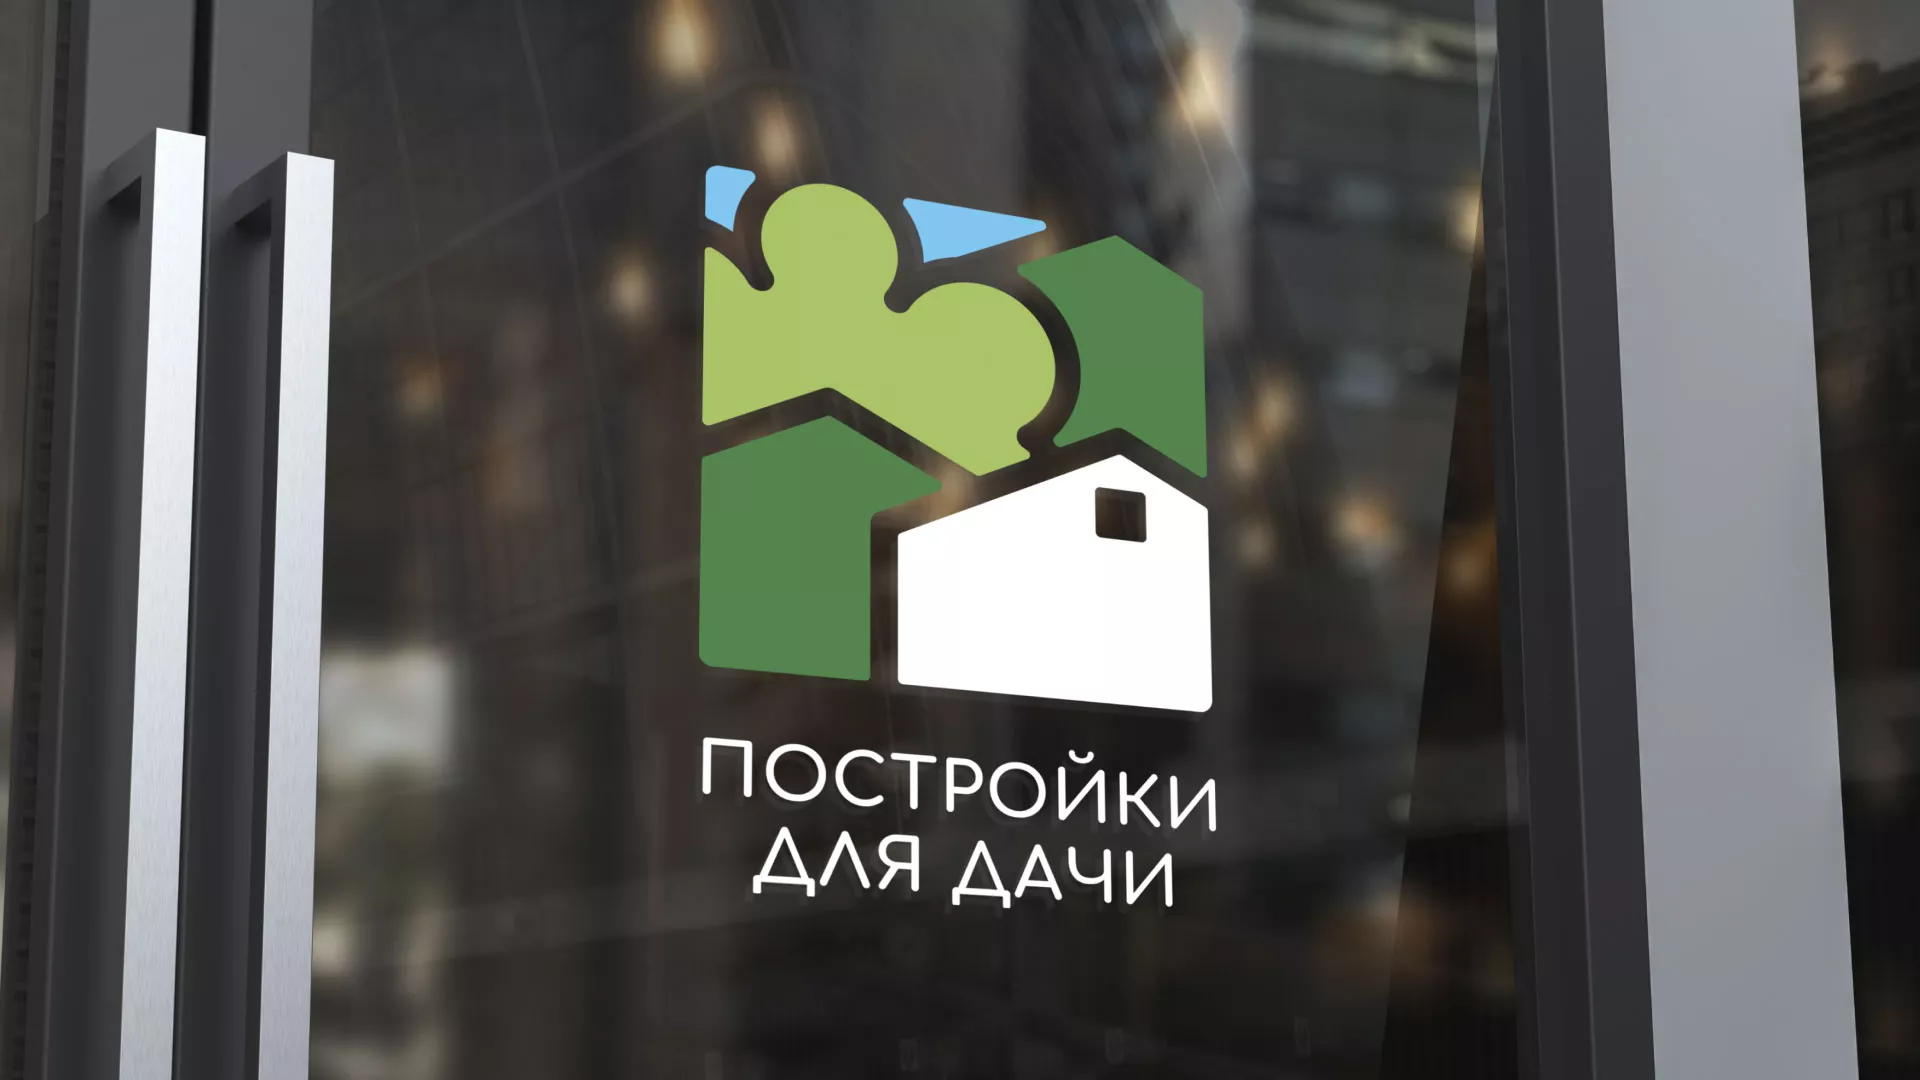 Разработка логотипа в Болгаре для компании «Постройки для дачи»